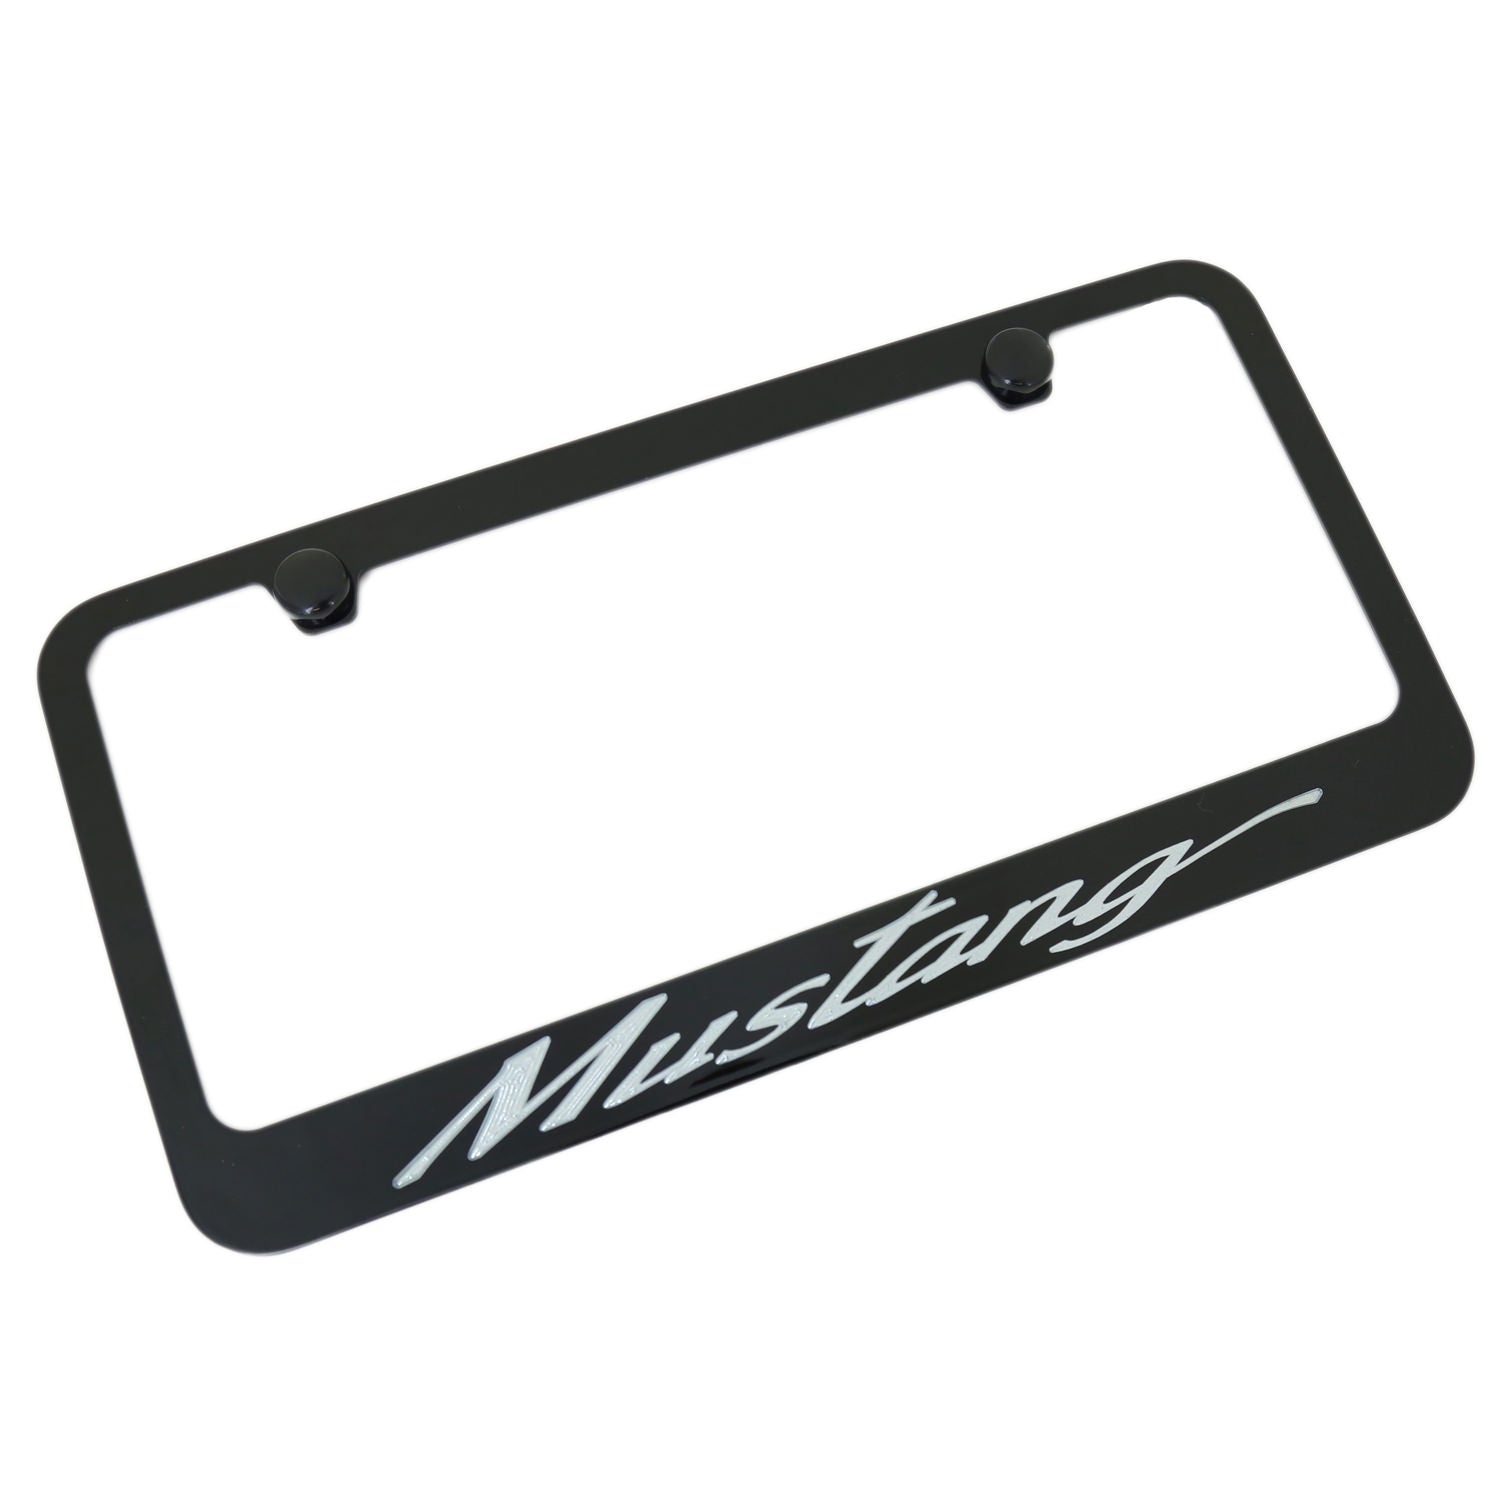 Ford Mustang California Script License Plate Frame (Black) - Custom Werks